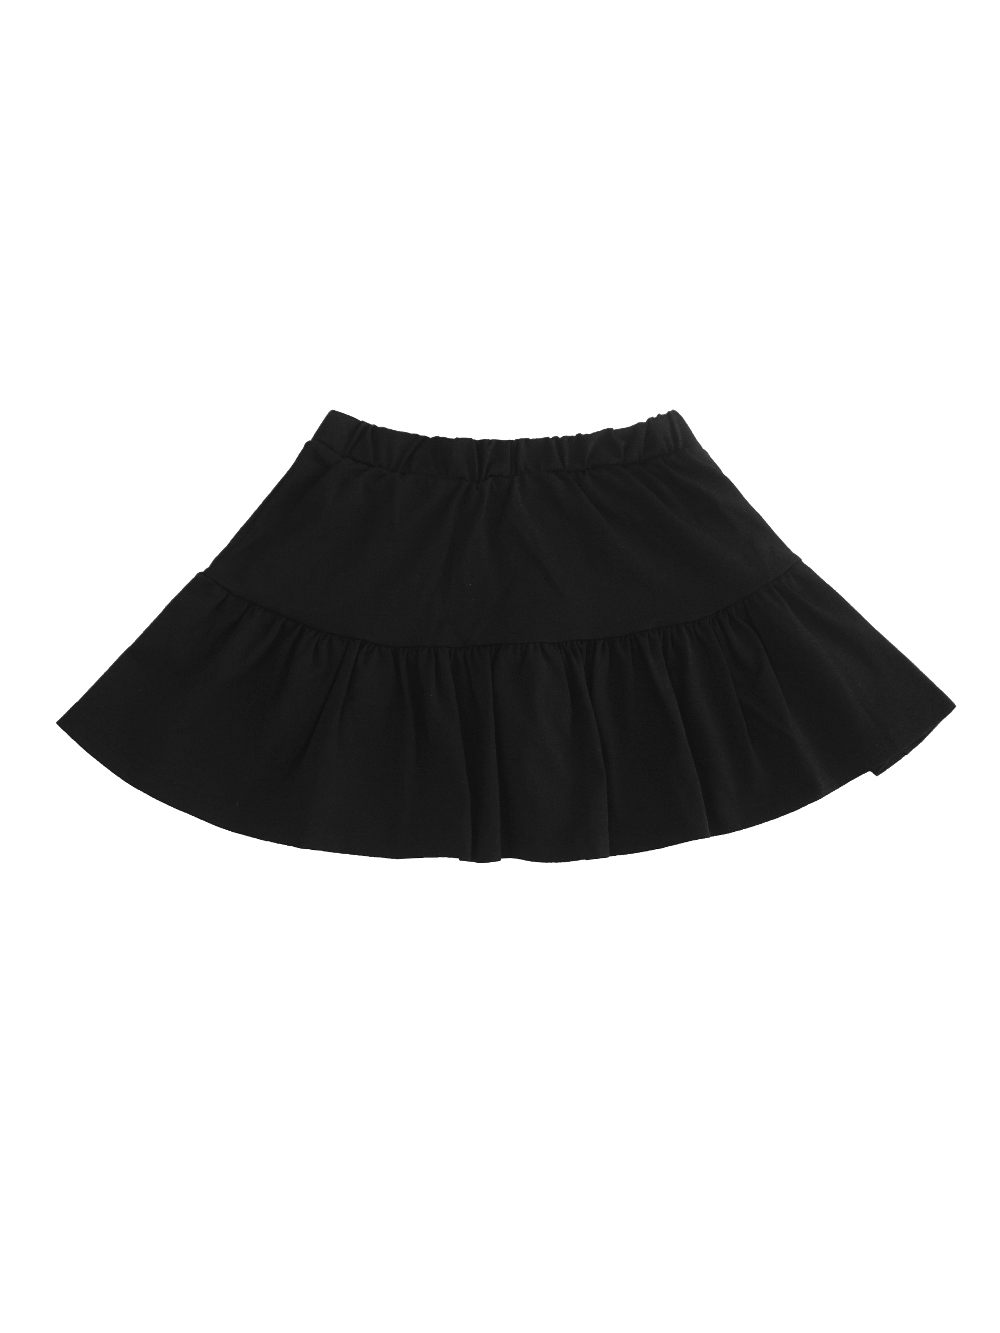 Soft Ice Skirt : Black